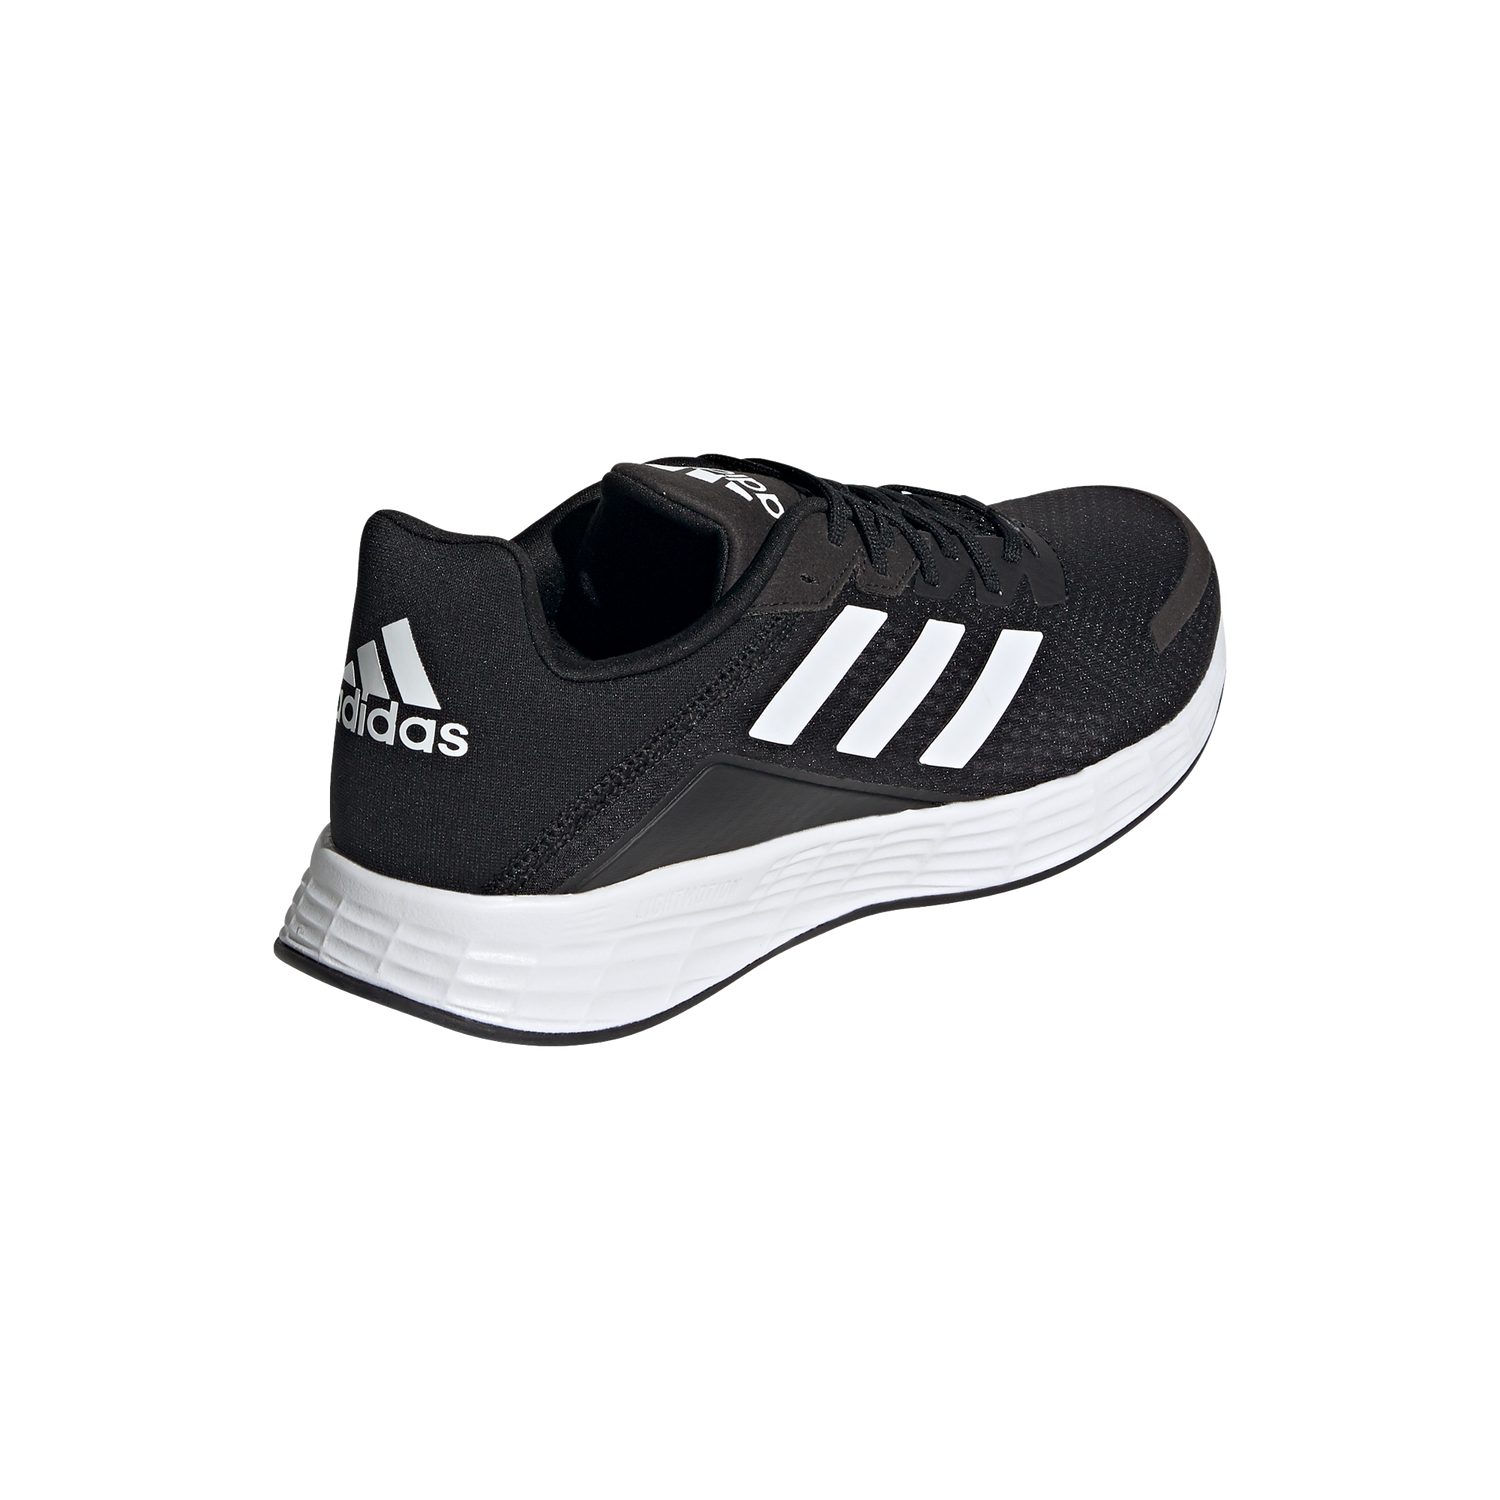 Adidas Duramo SL Men's Running Shoes